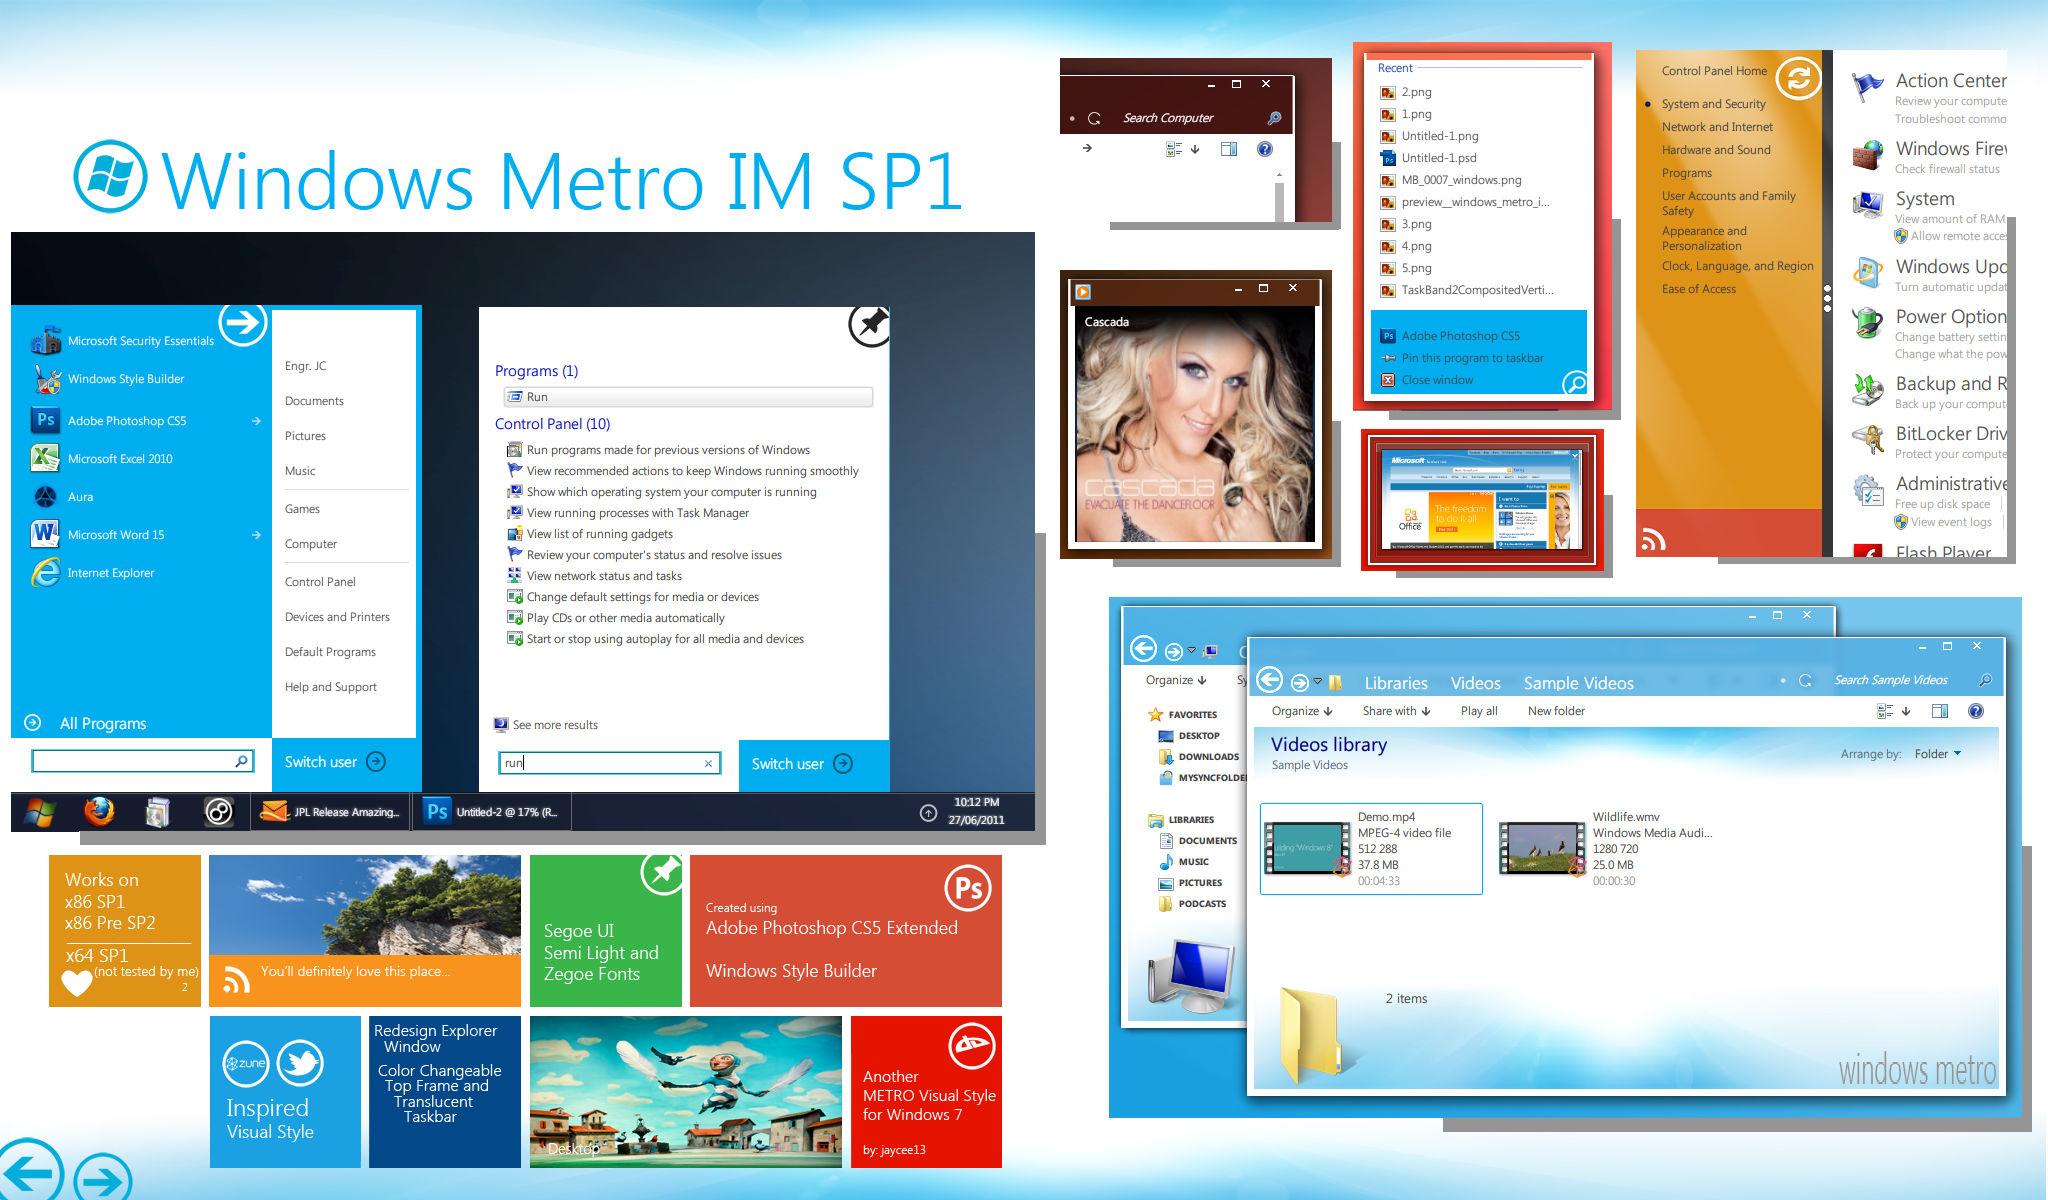 Windows Metro IM SP1